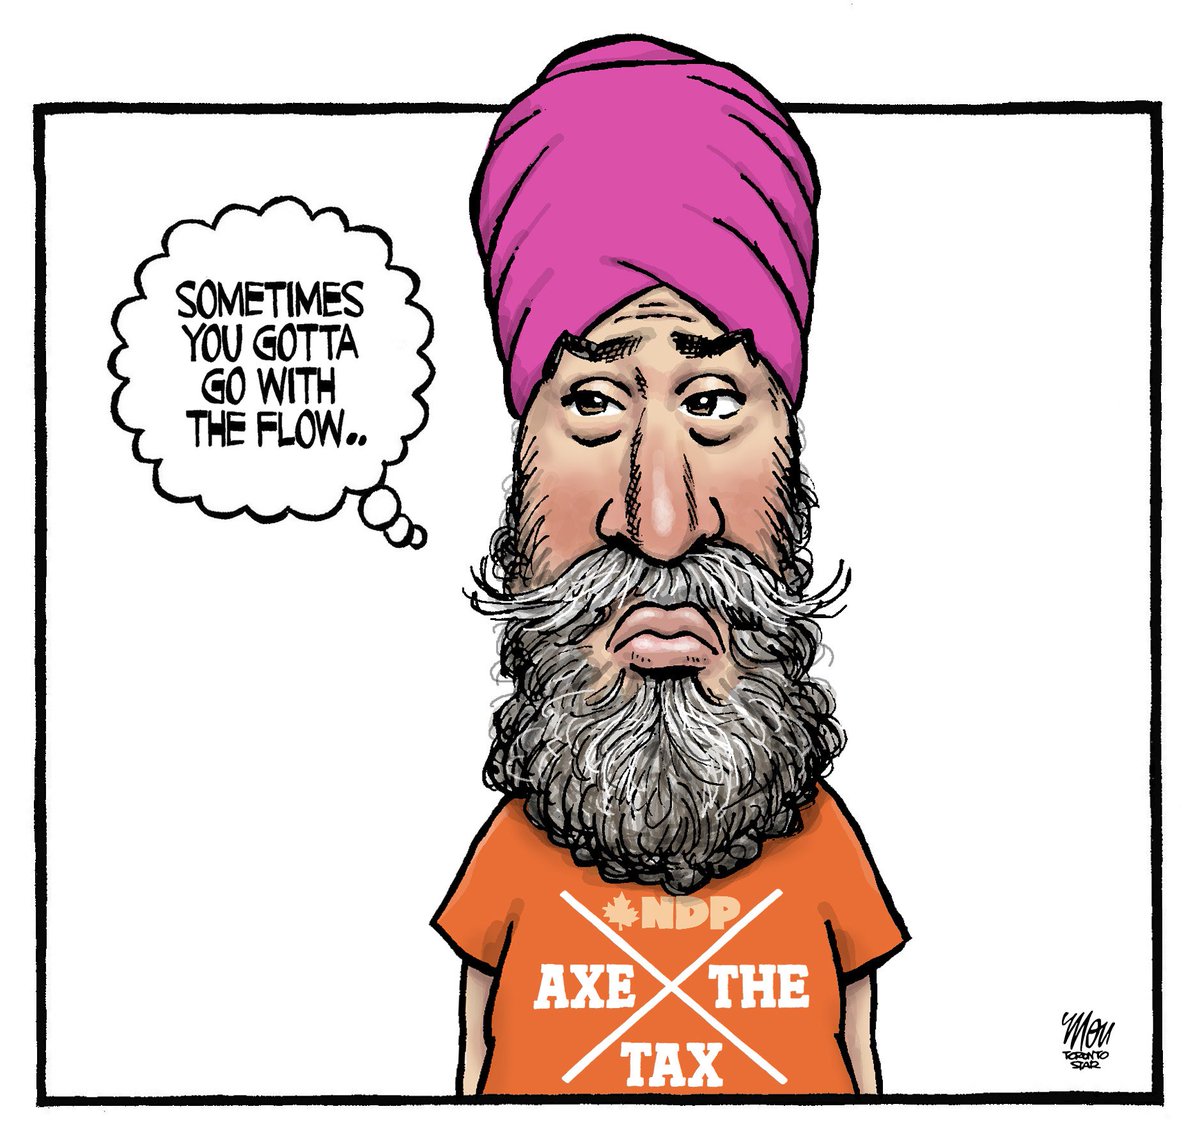 Please enjoy my cartoon for Tuesday's @TorontoStar